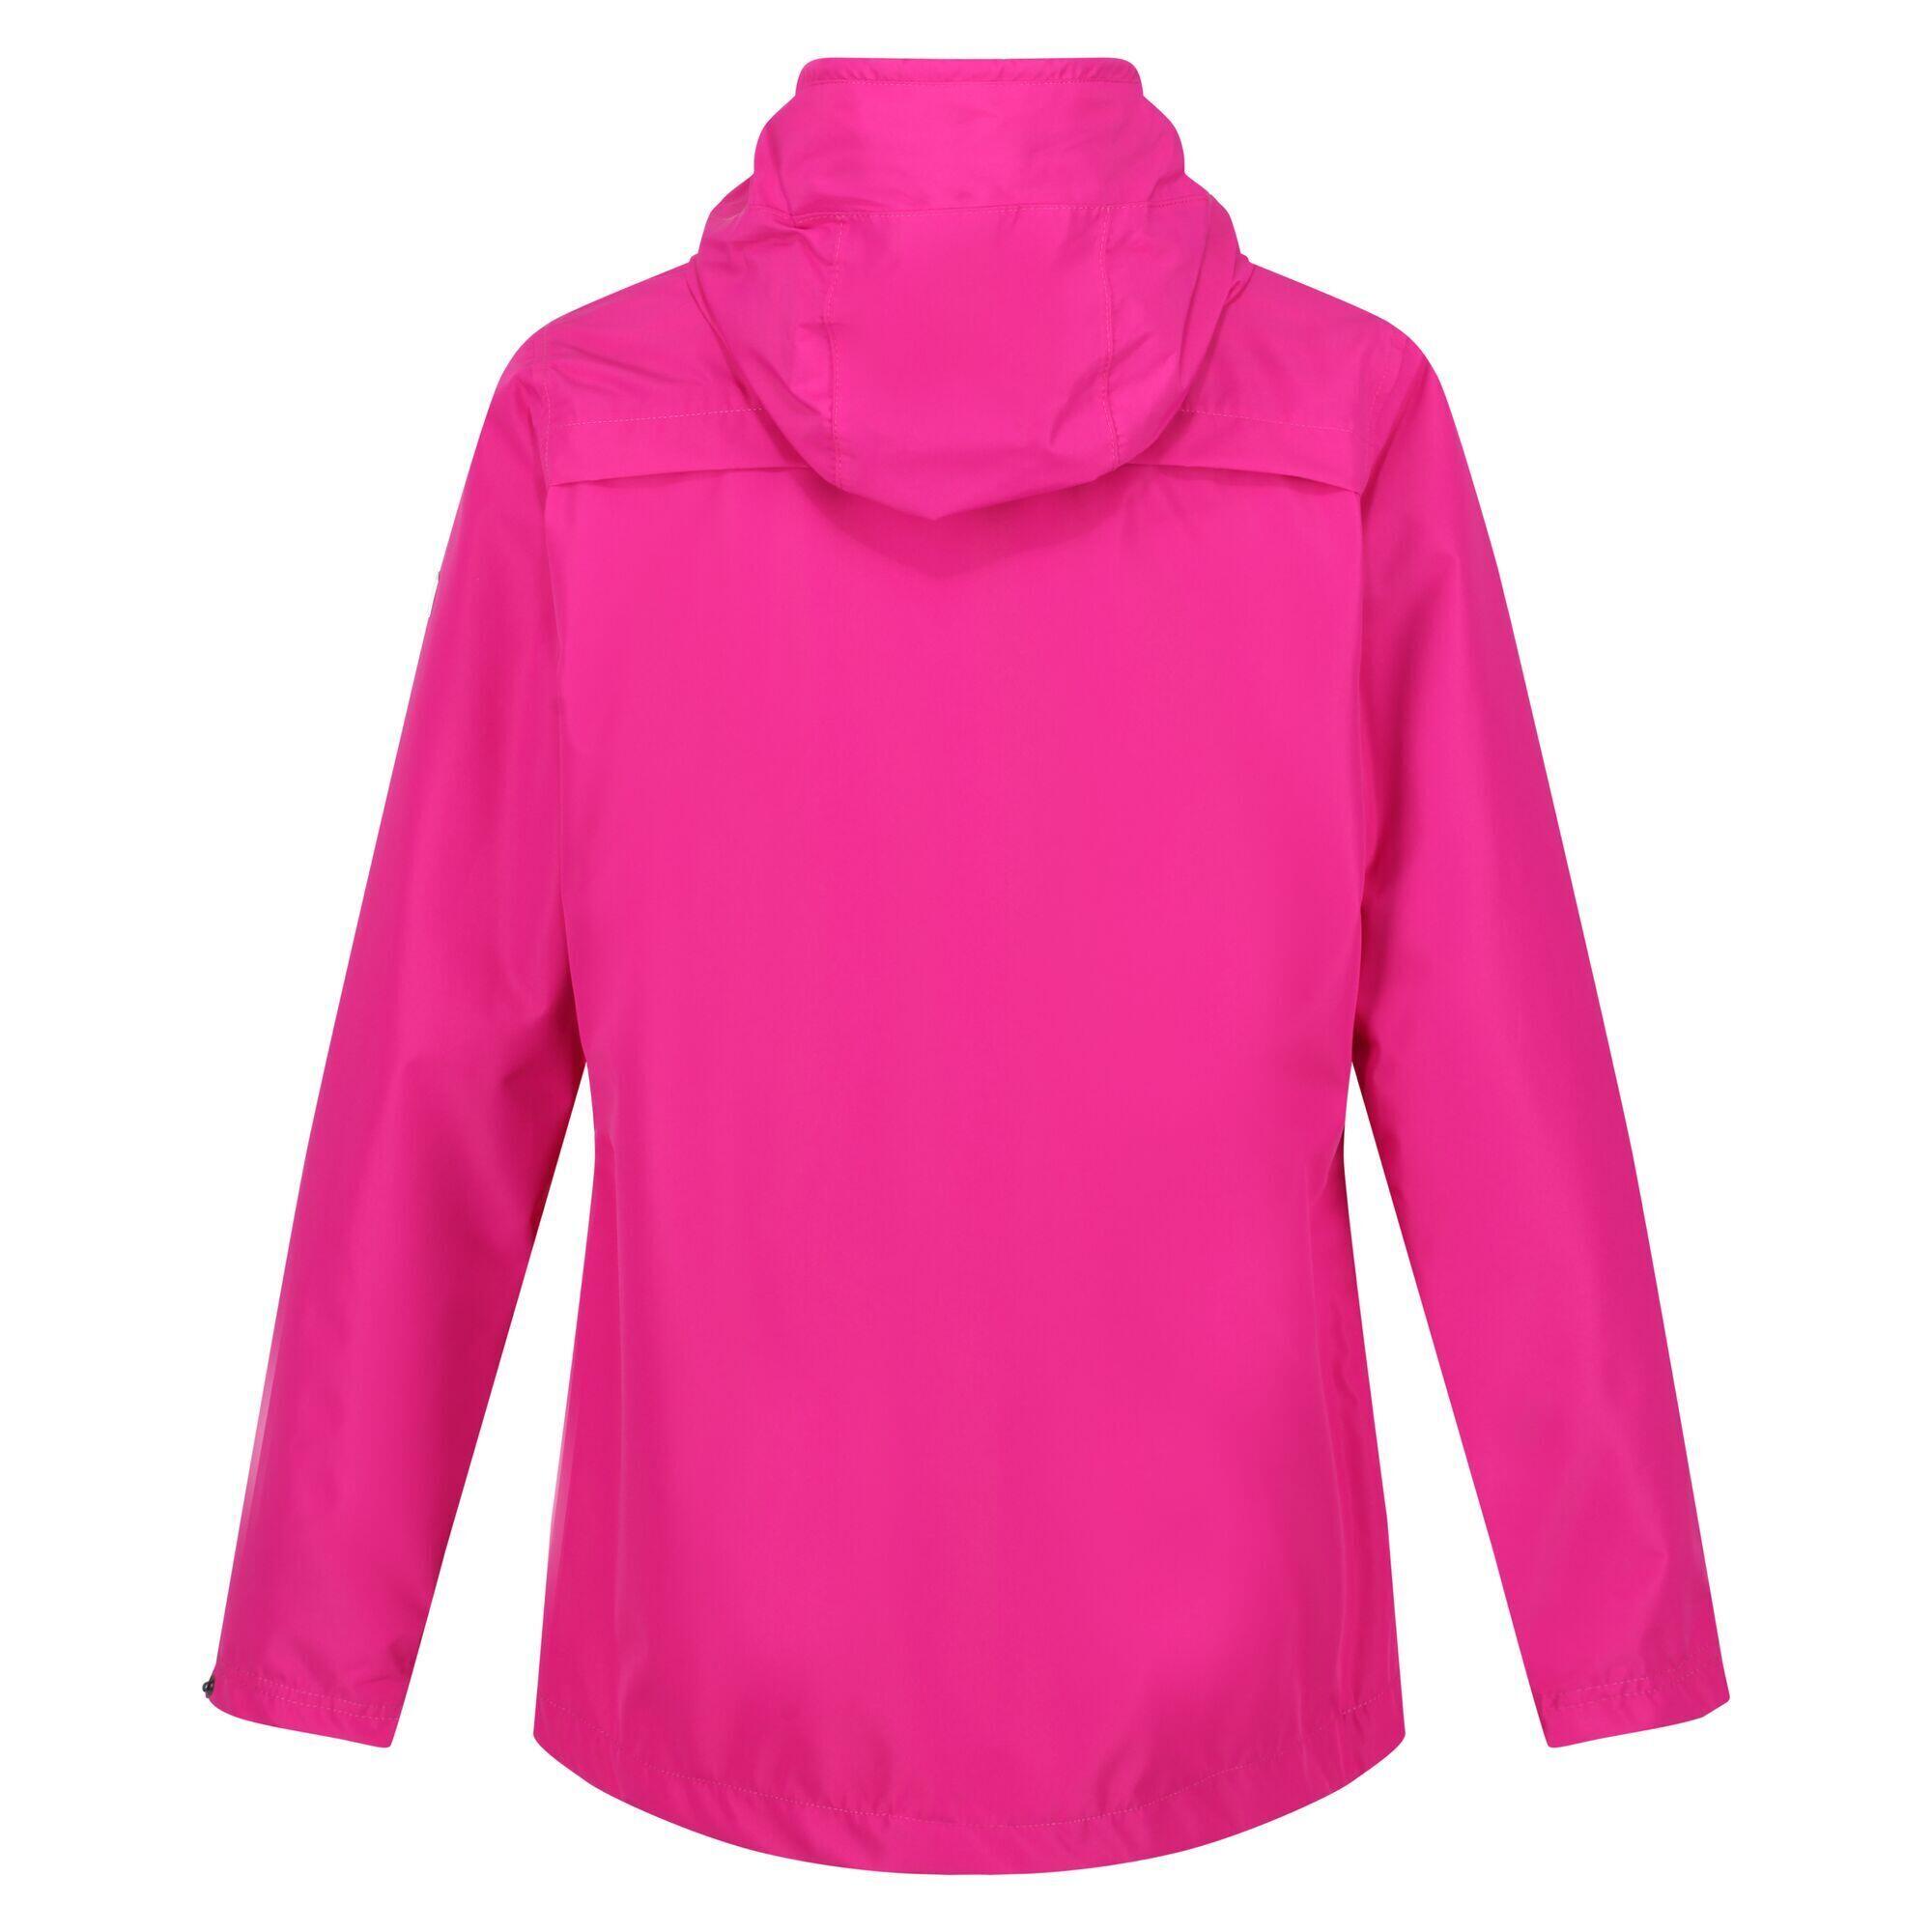 Womens/Ladies Bayarma Lightweight Waterproof Jacket (Neon Pink) 2/5